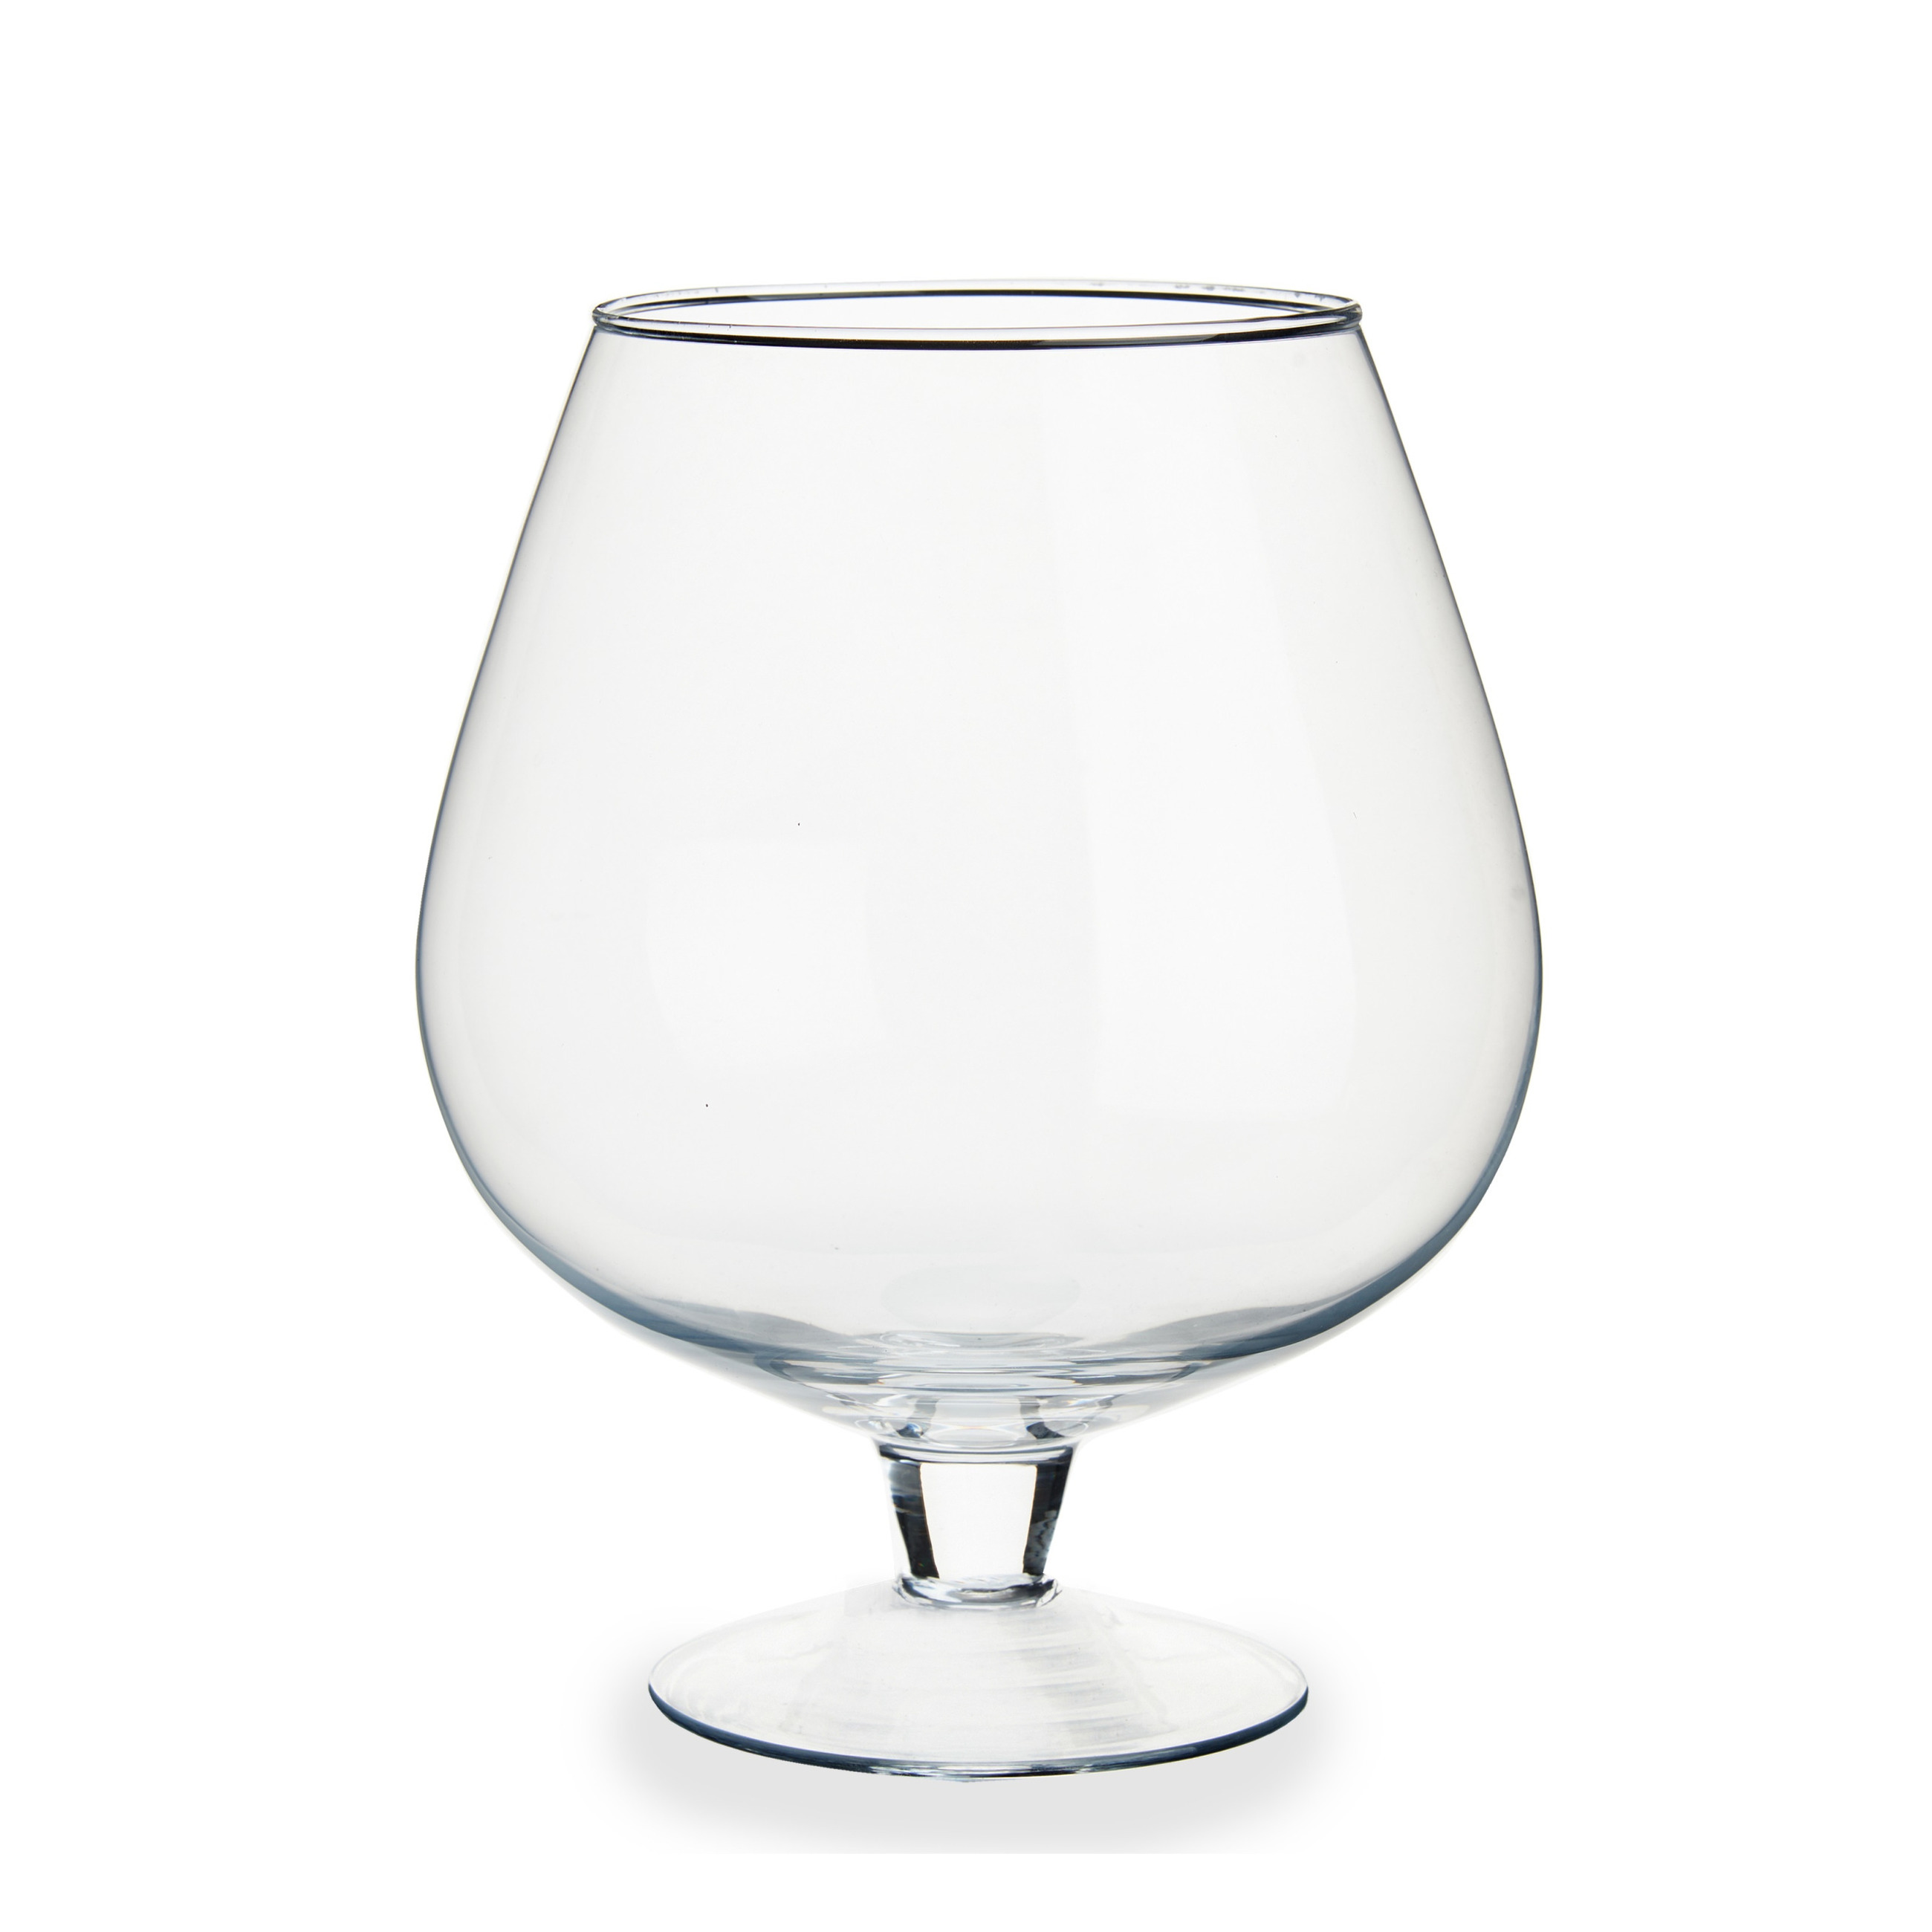 Glazen wijnglas-decoratie vaas 19 x 23 cm